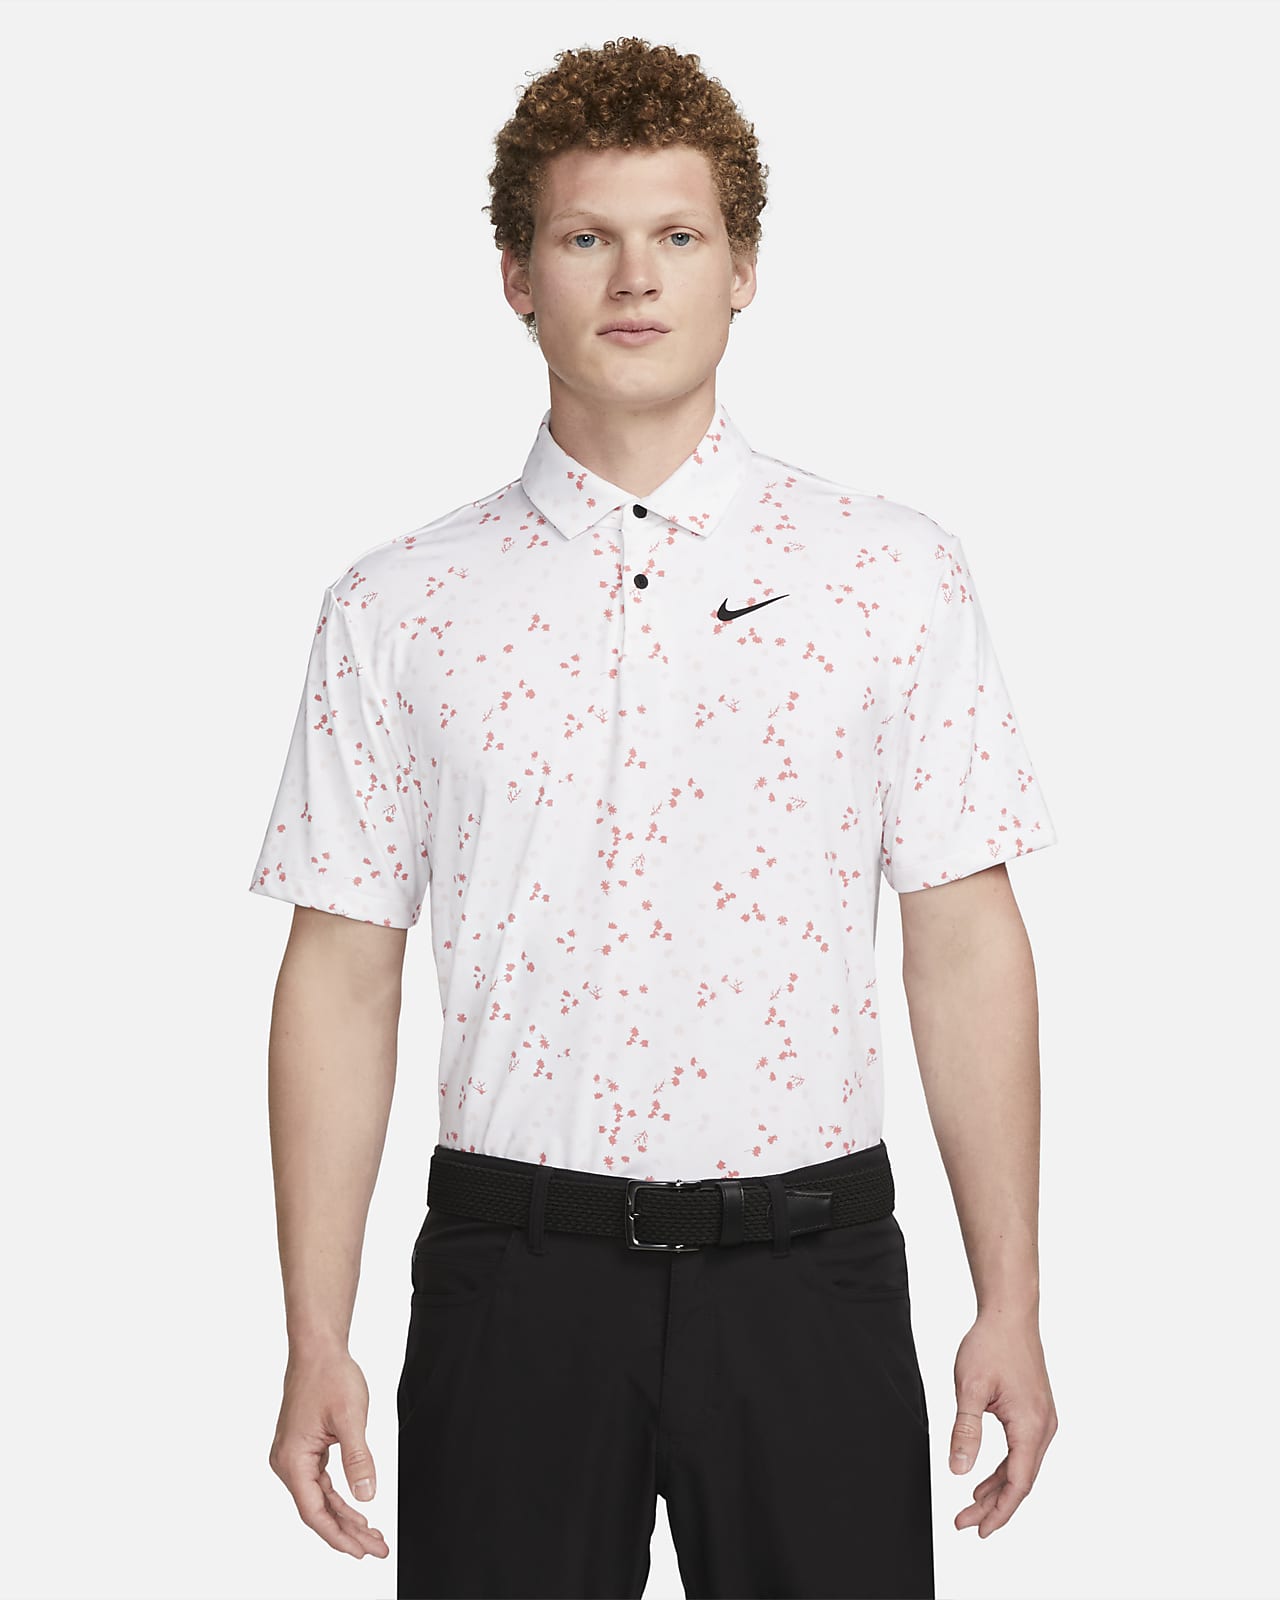 Nike Dri-FIT Tour virágmintás, galléros férfi golfpóló